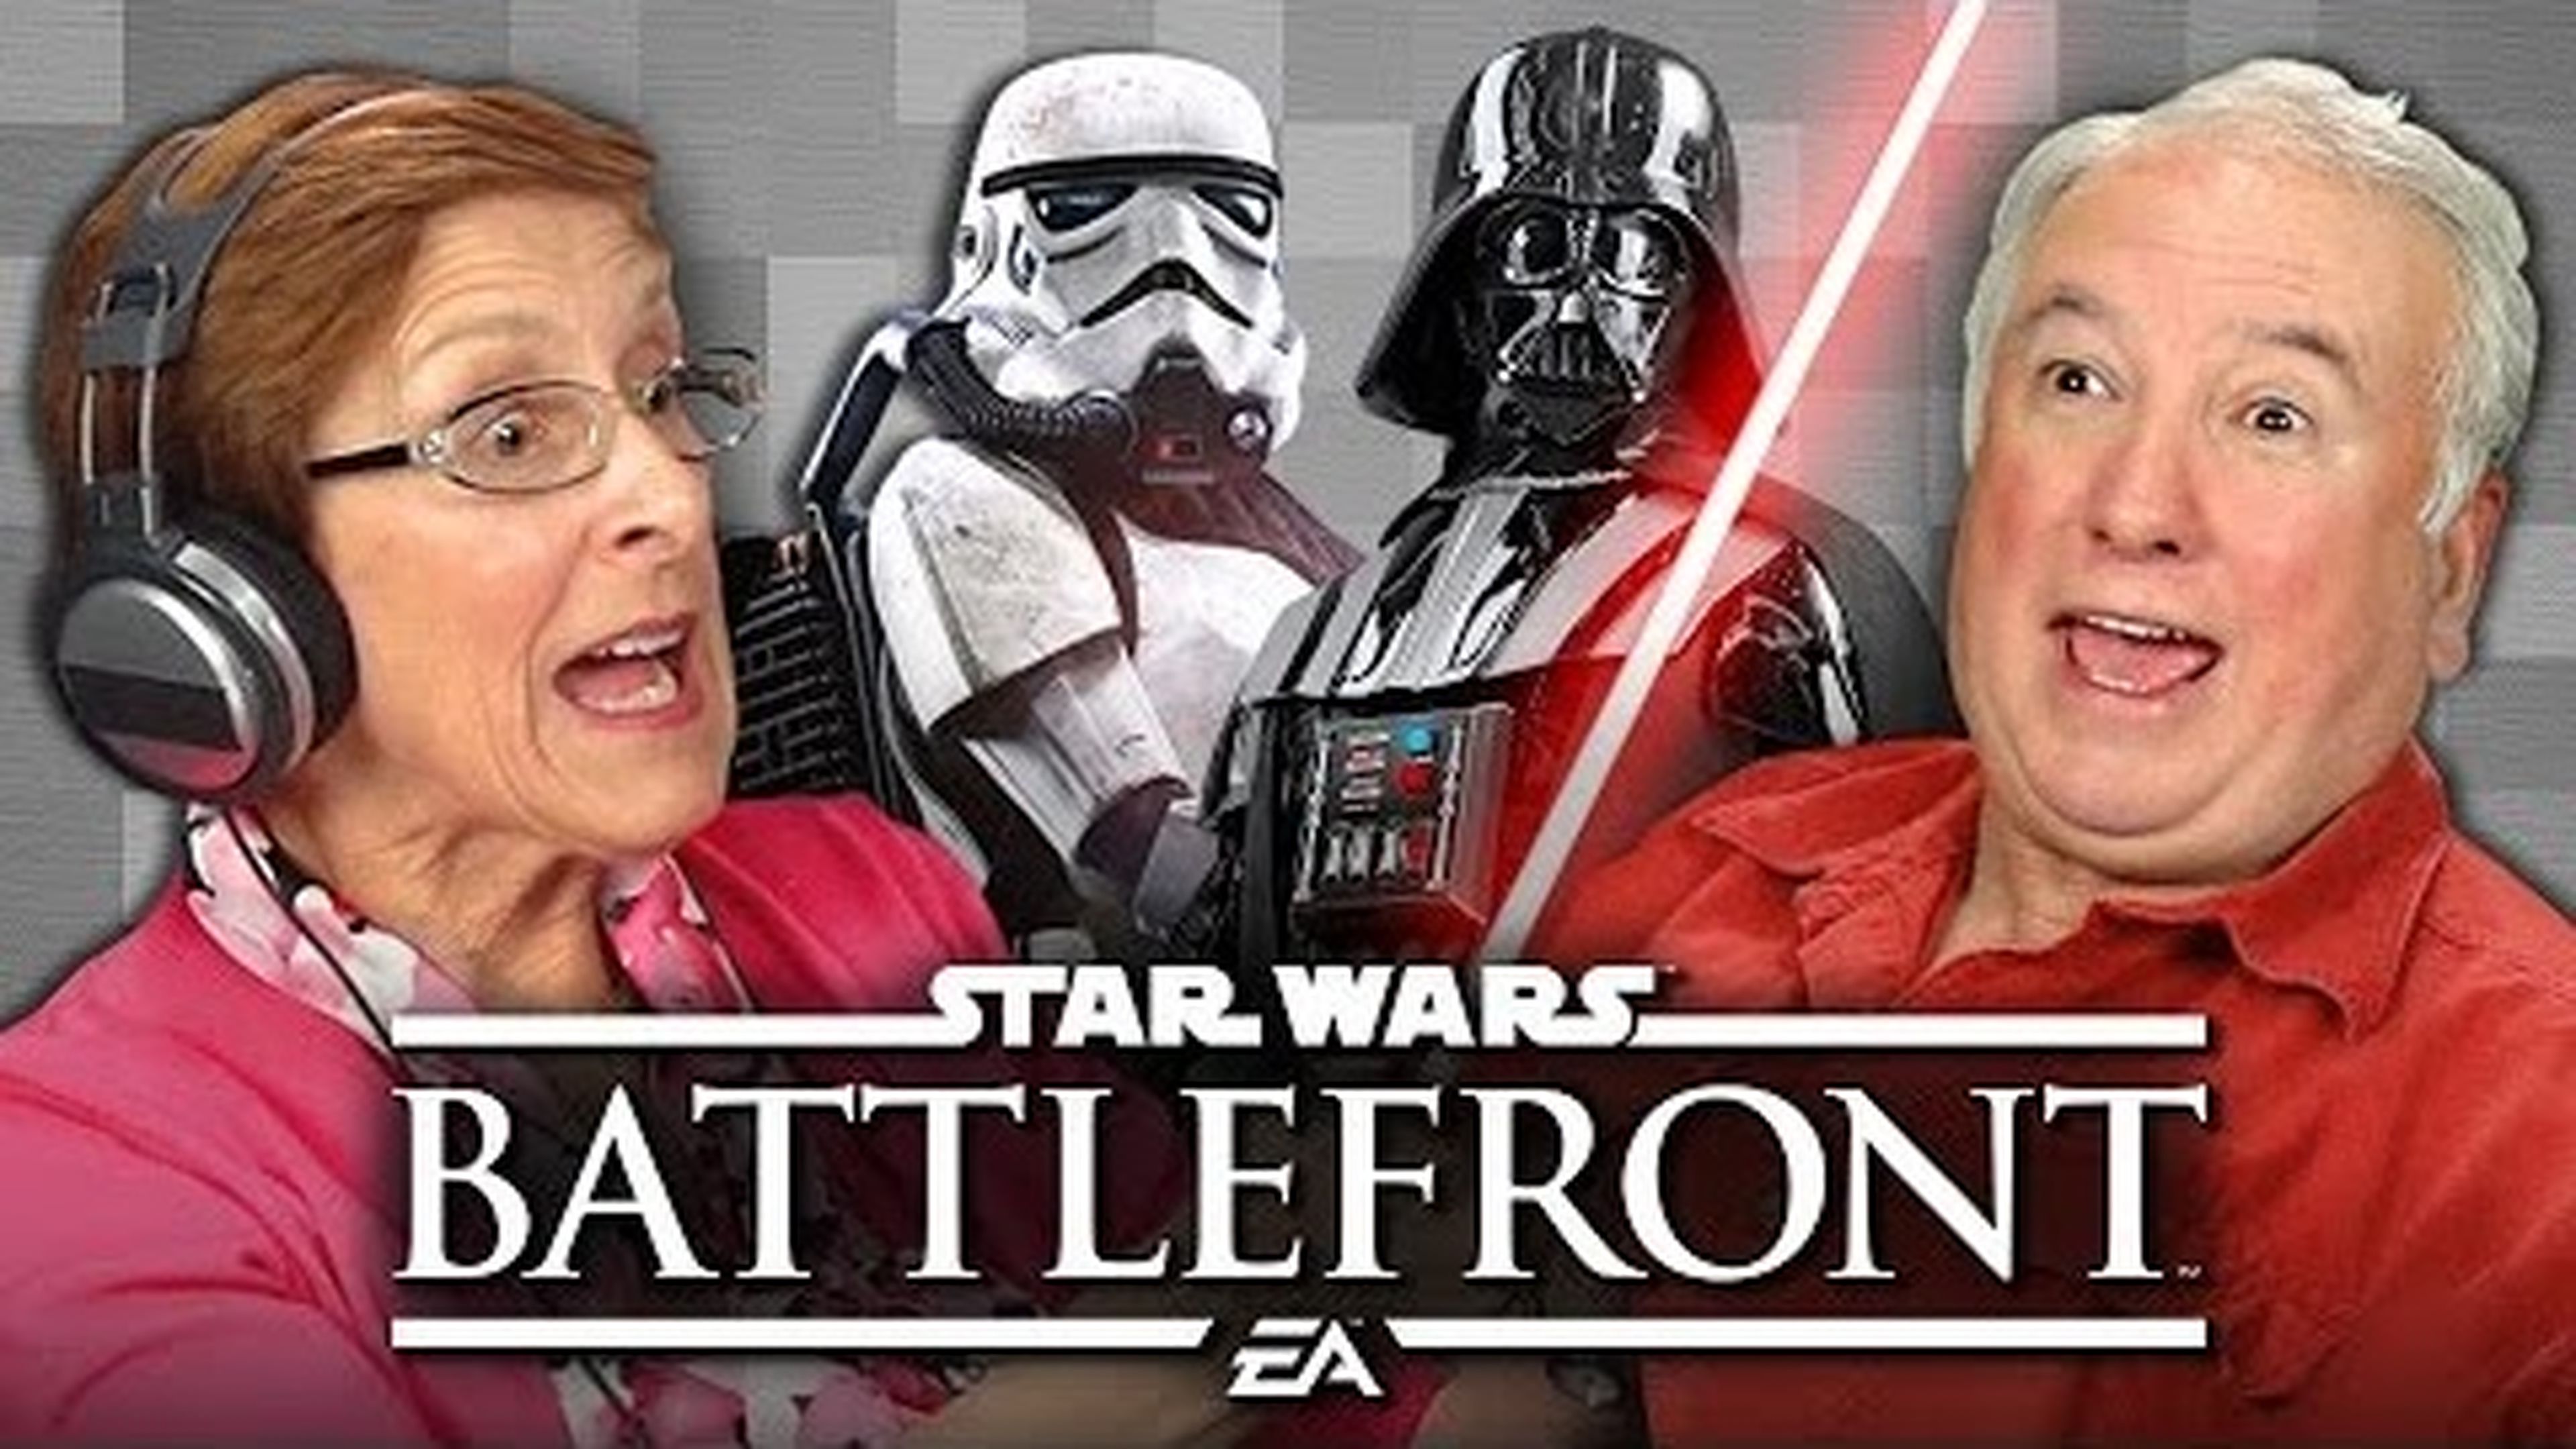 Star Wars Battlefront, las reacciones de los mayores al jugar